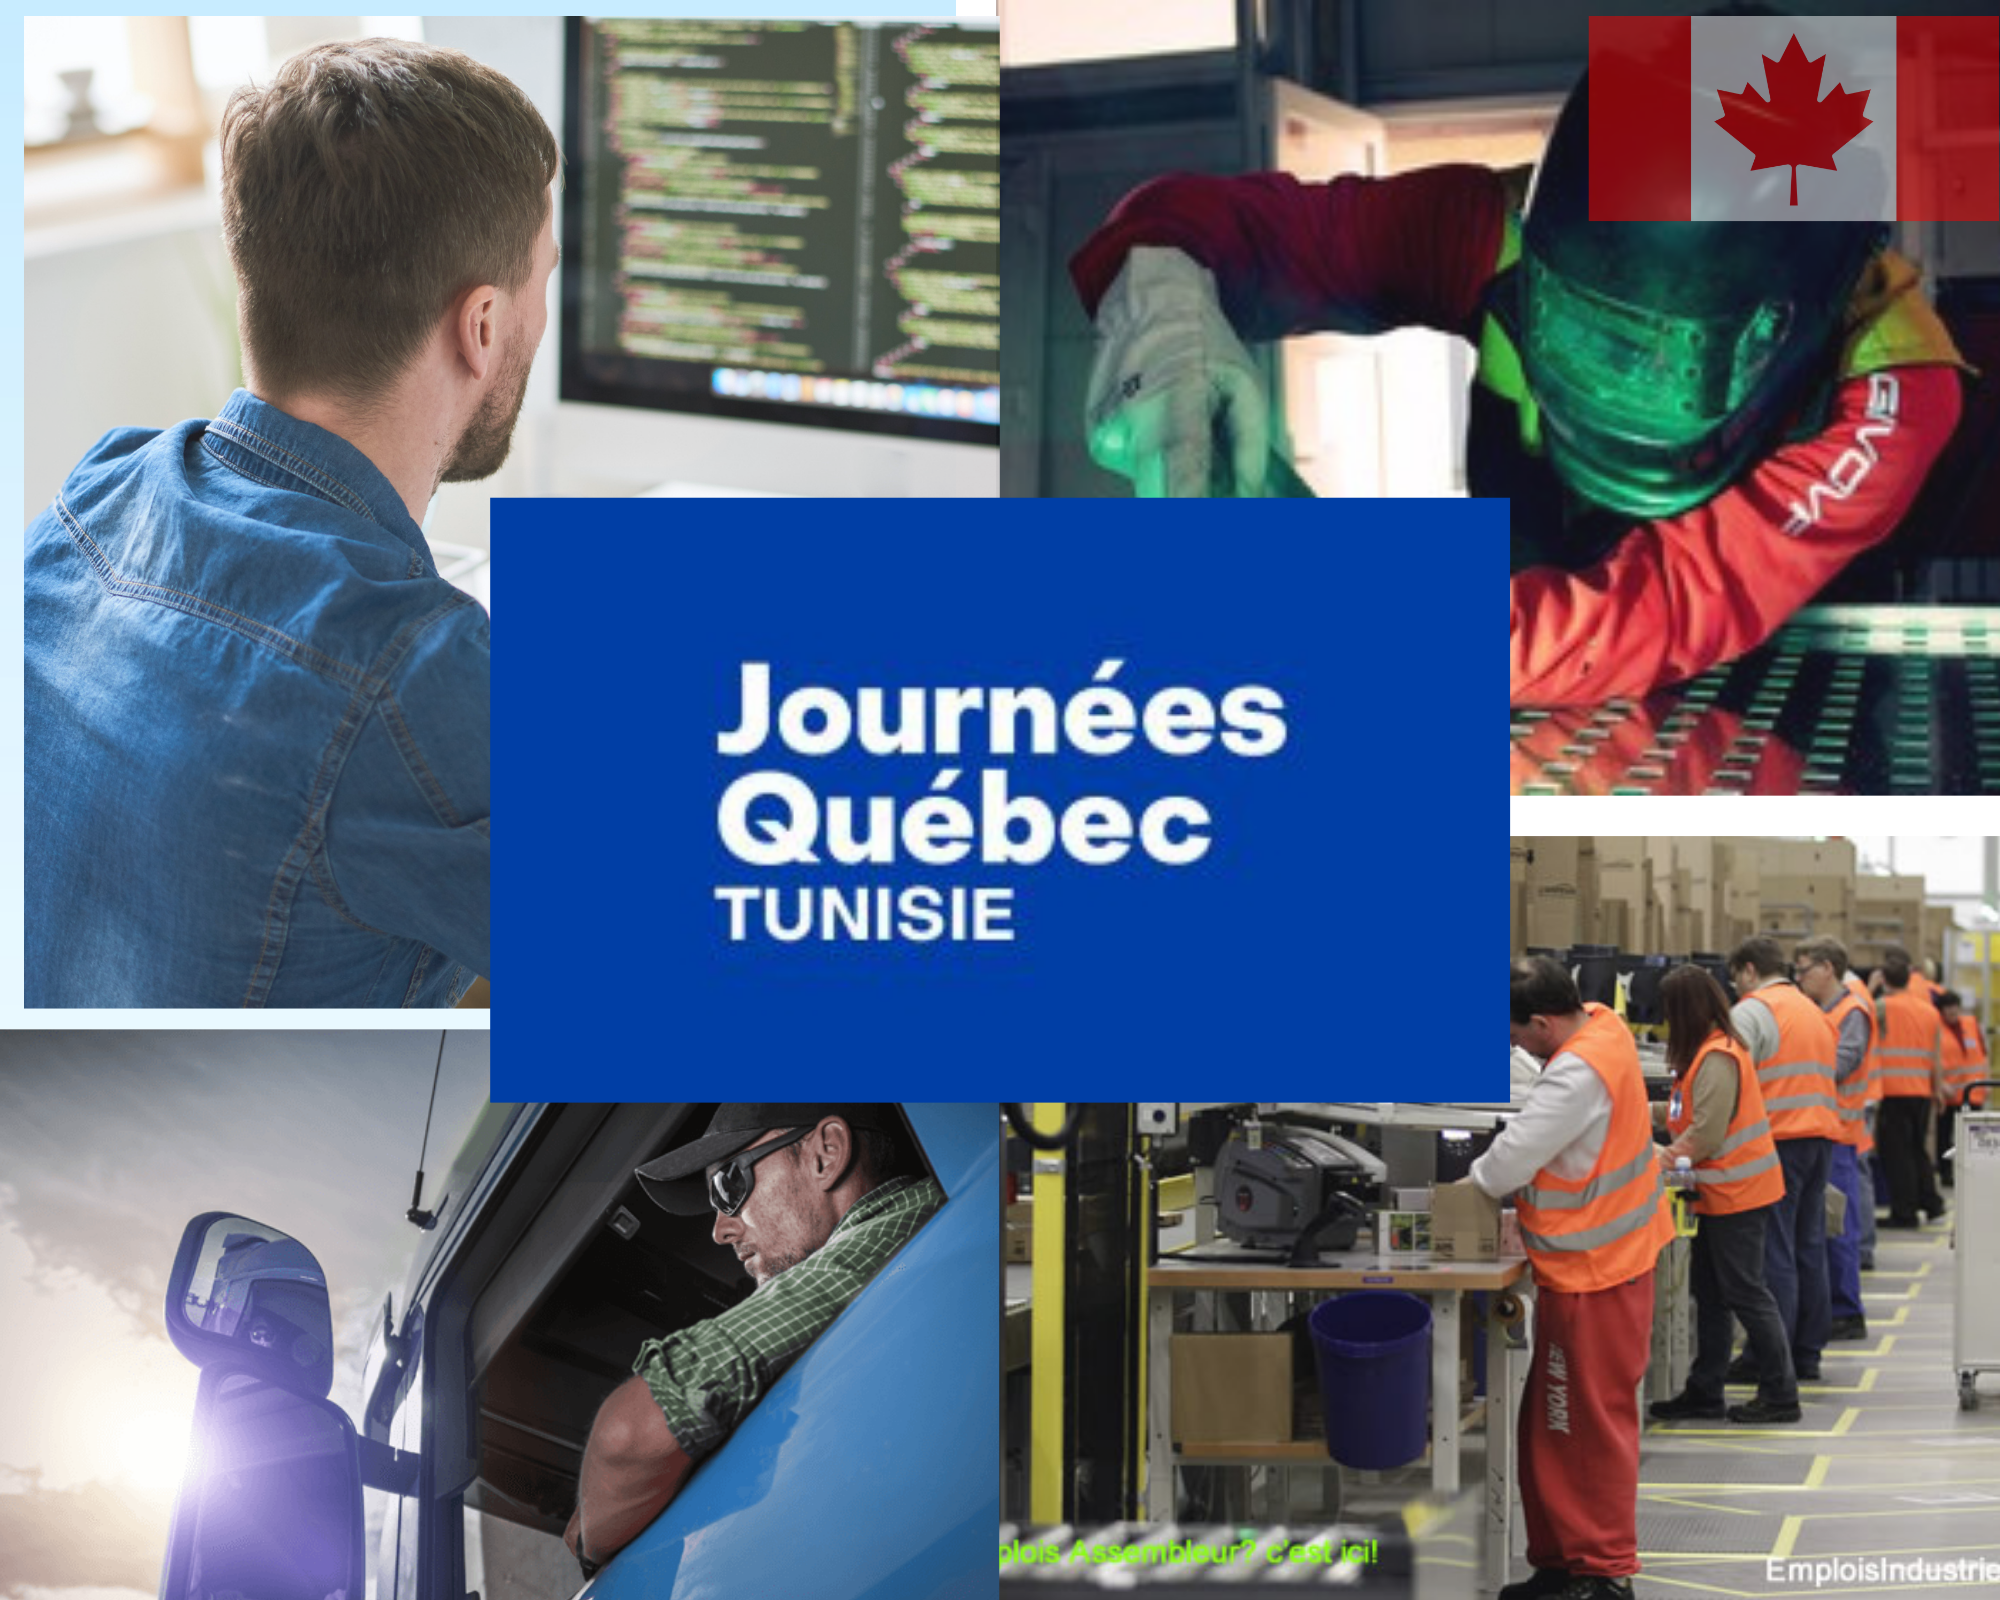 Consulter tous les offres disponibles de la journée Québec Tunisie du 26 septembre au 7octobre 2022